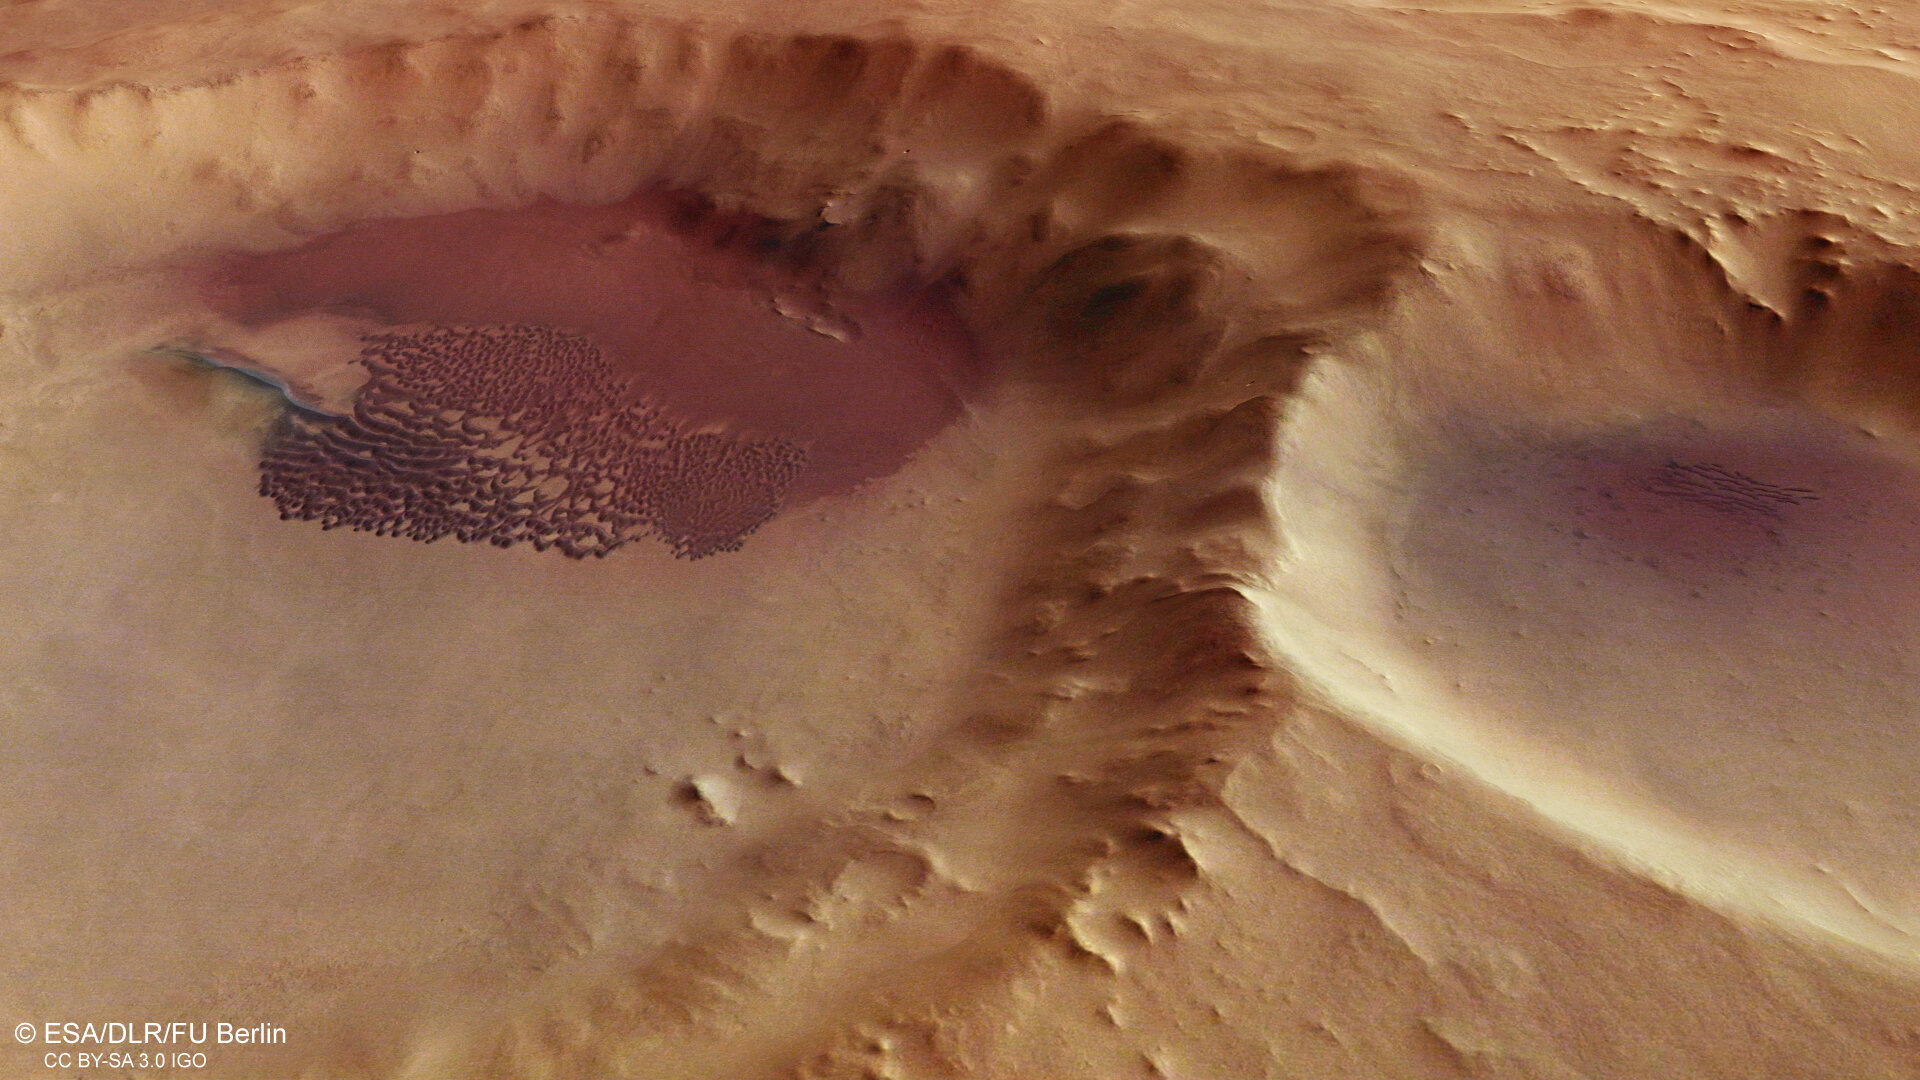 Pole dun v kráteru, perspektivní pohled